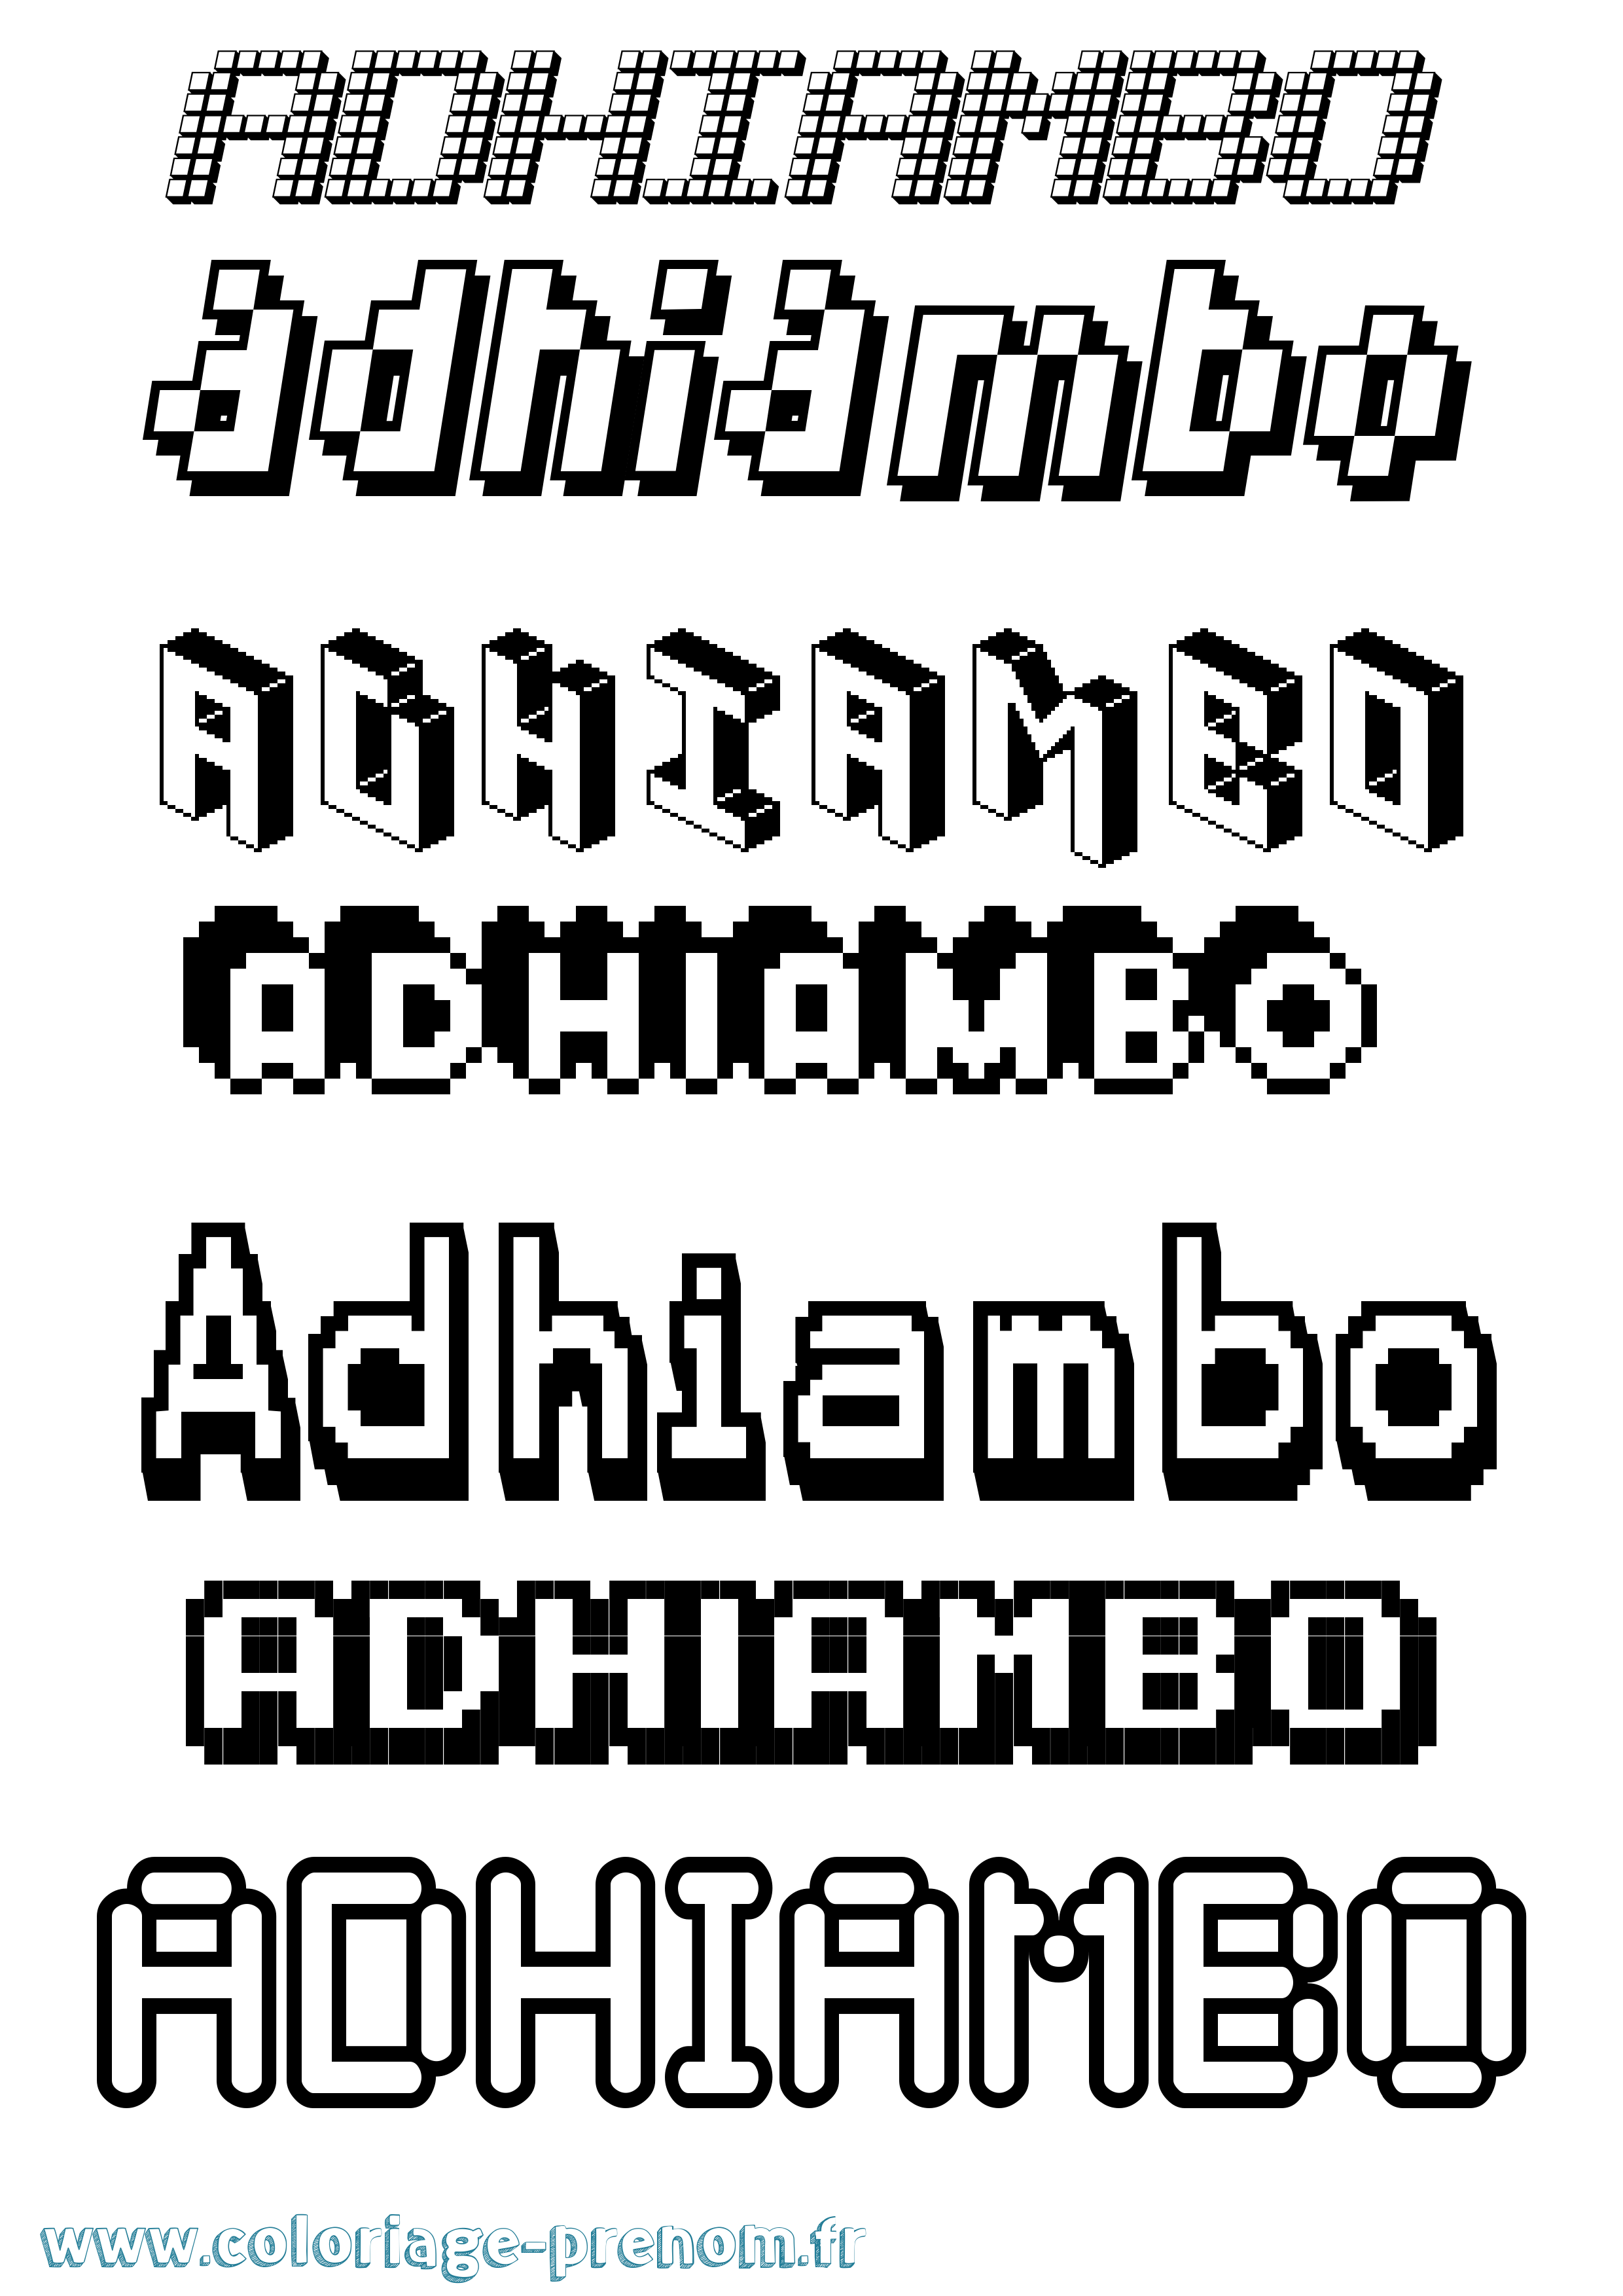 Coloriage prénom Adhiambo Pixel